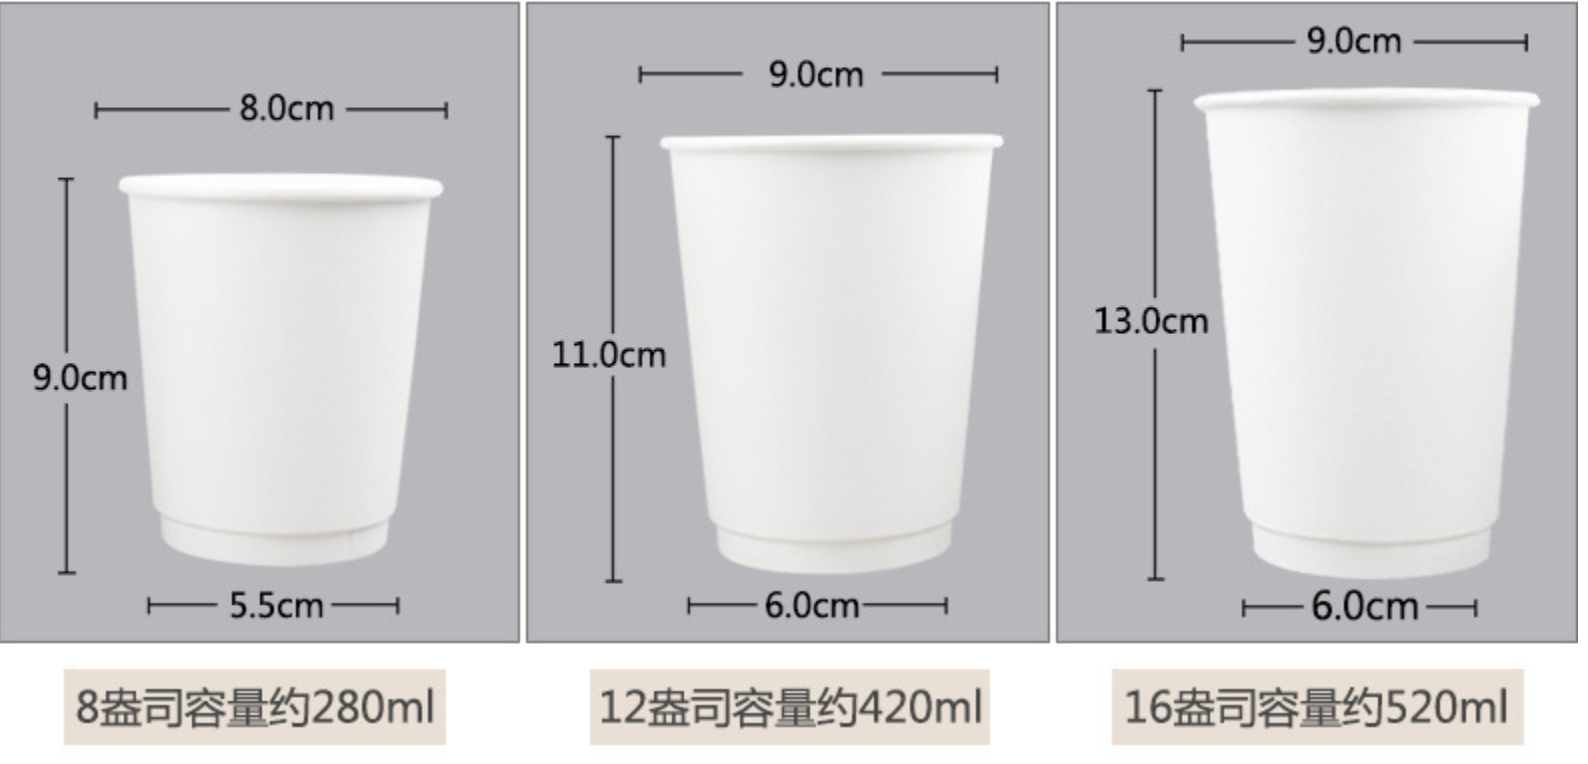 白色紙杯/ 中空杯(图16)